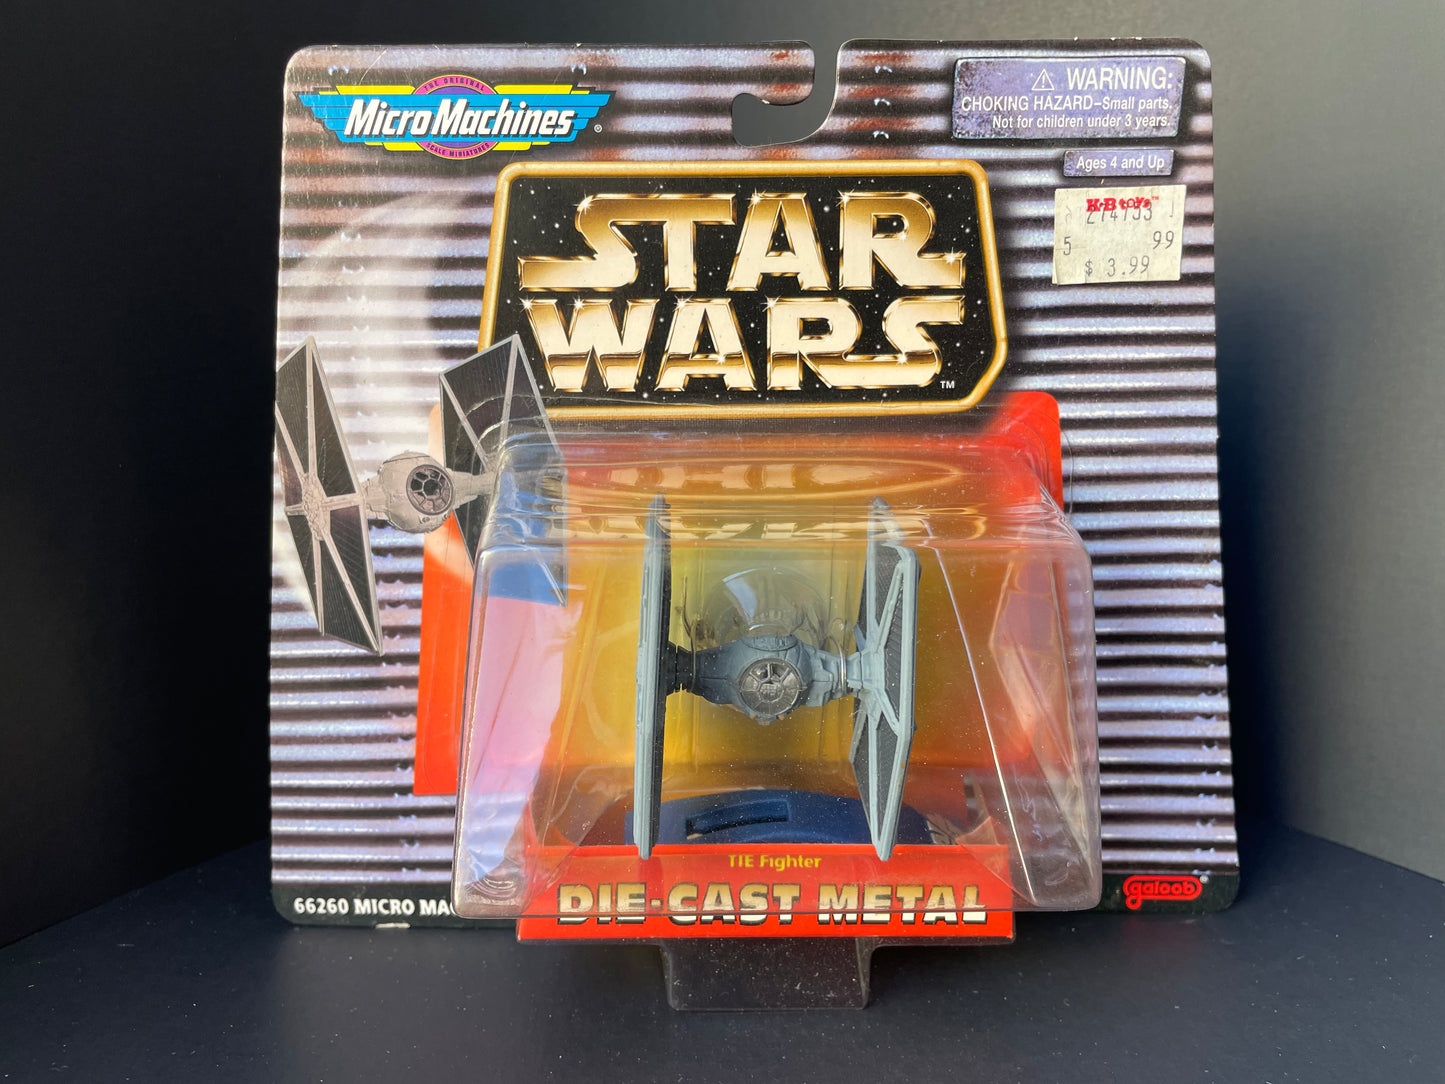 Micro Machines Die-cast Metal: Star Wars Imperial Tie Fighter